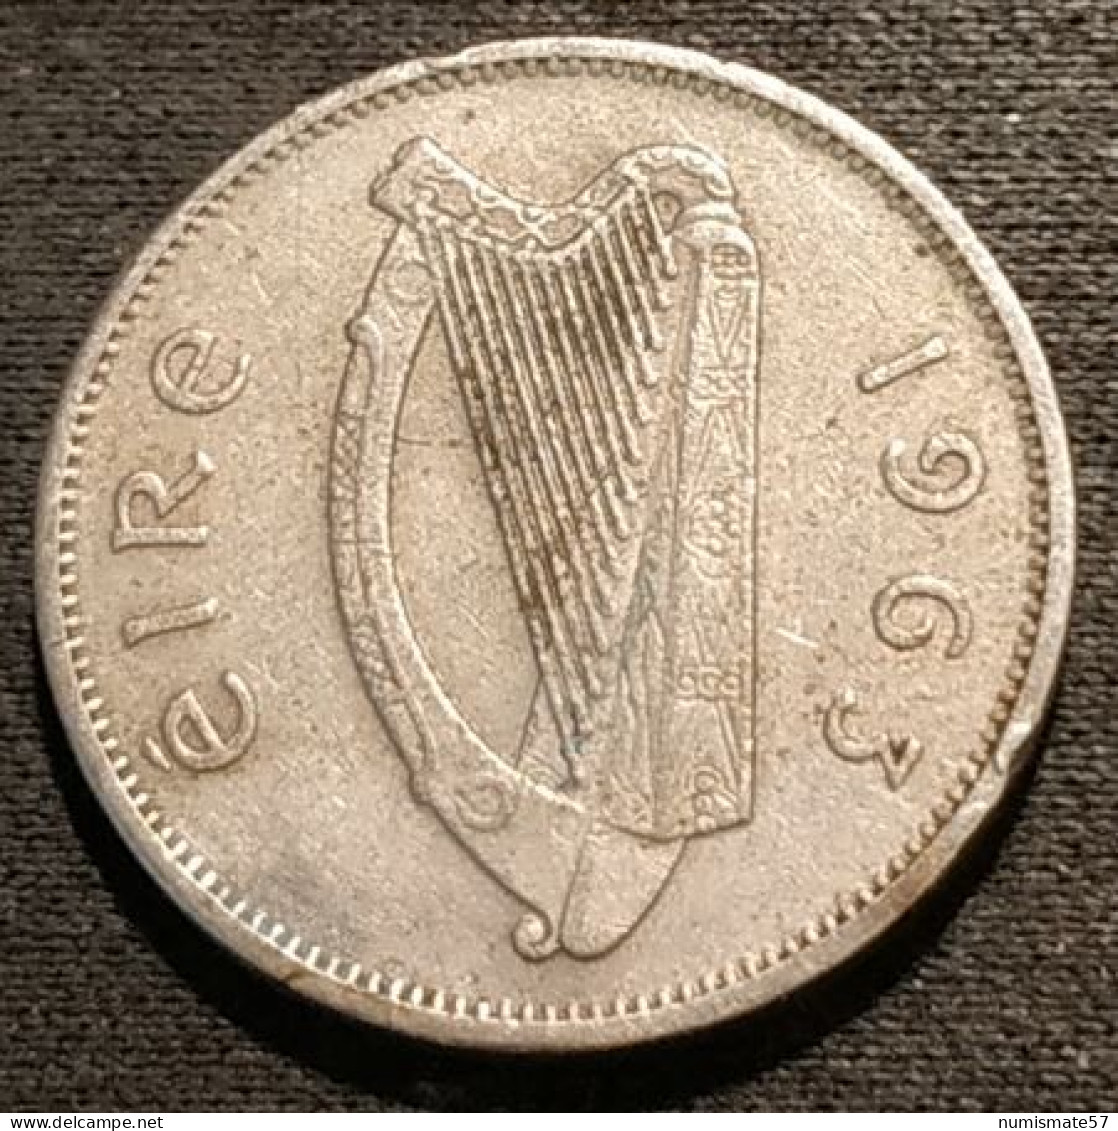 IRLANDE - EIRE - 6 Pingin / 1 Reul 1963 - KM 13a - Chien - Dog - IRELAND - Irlande